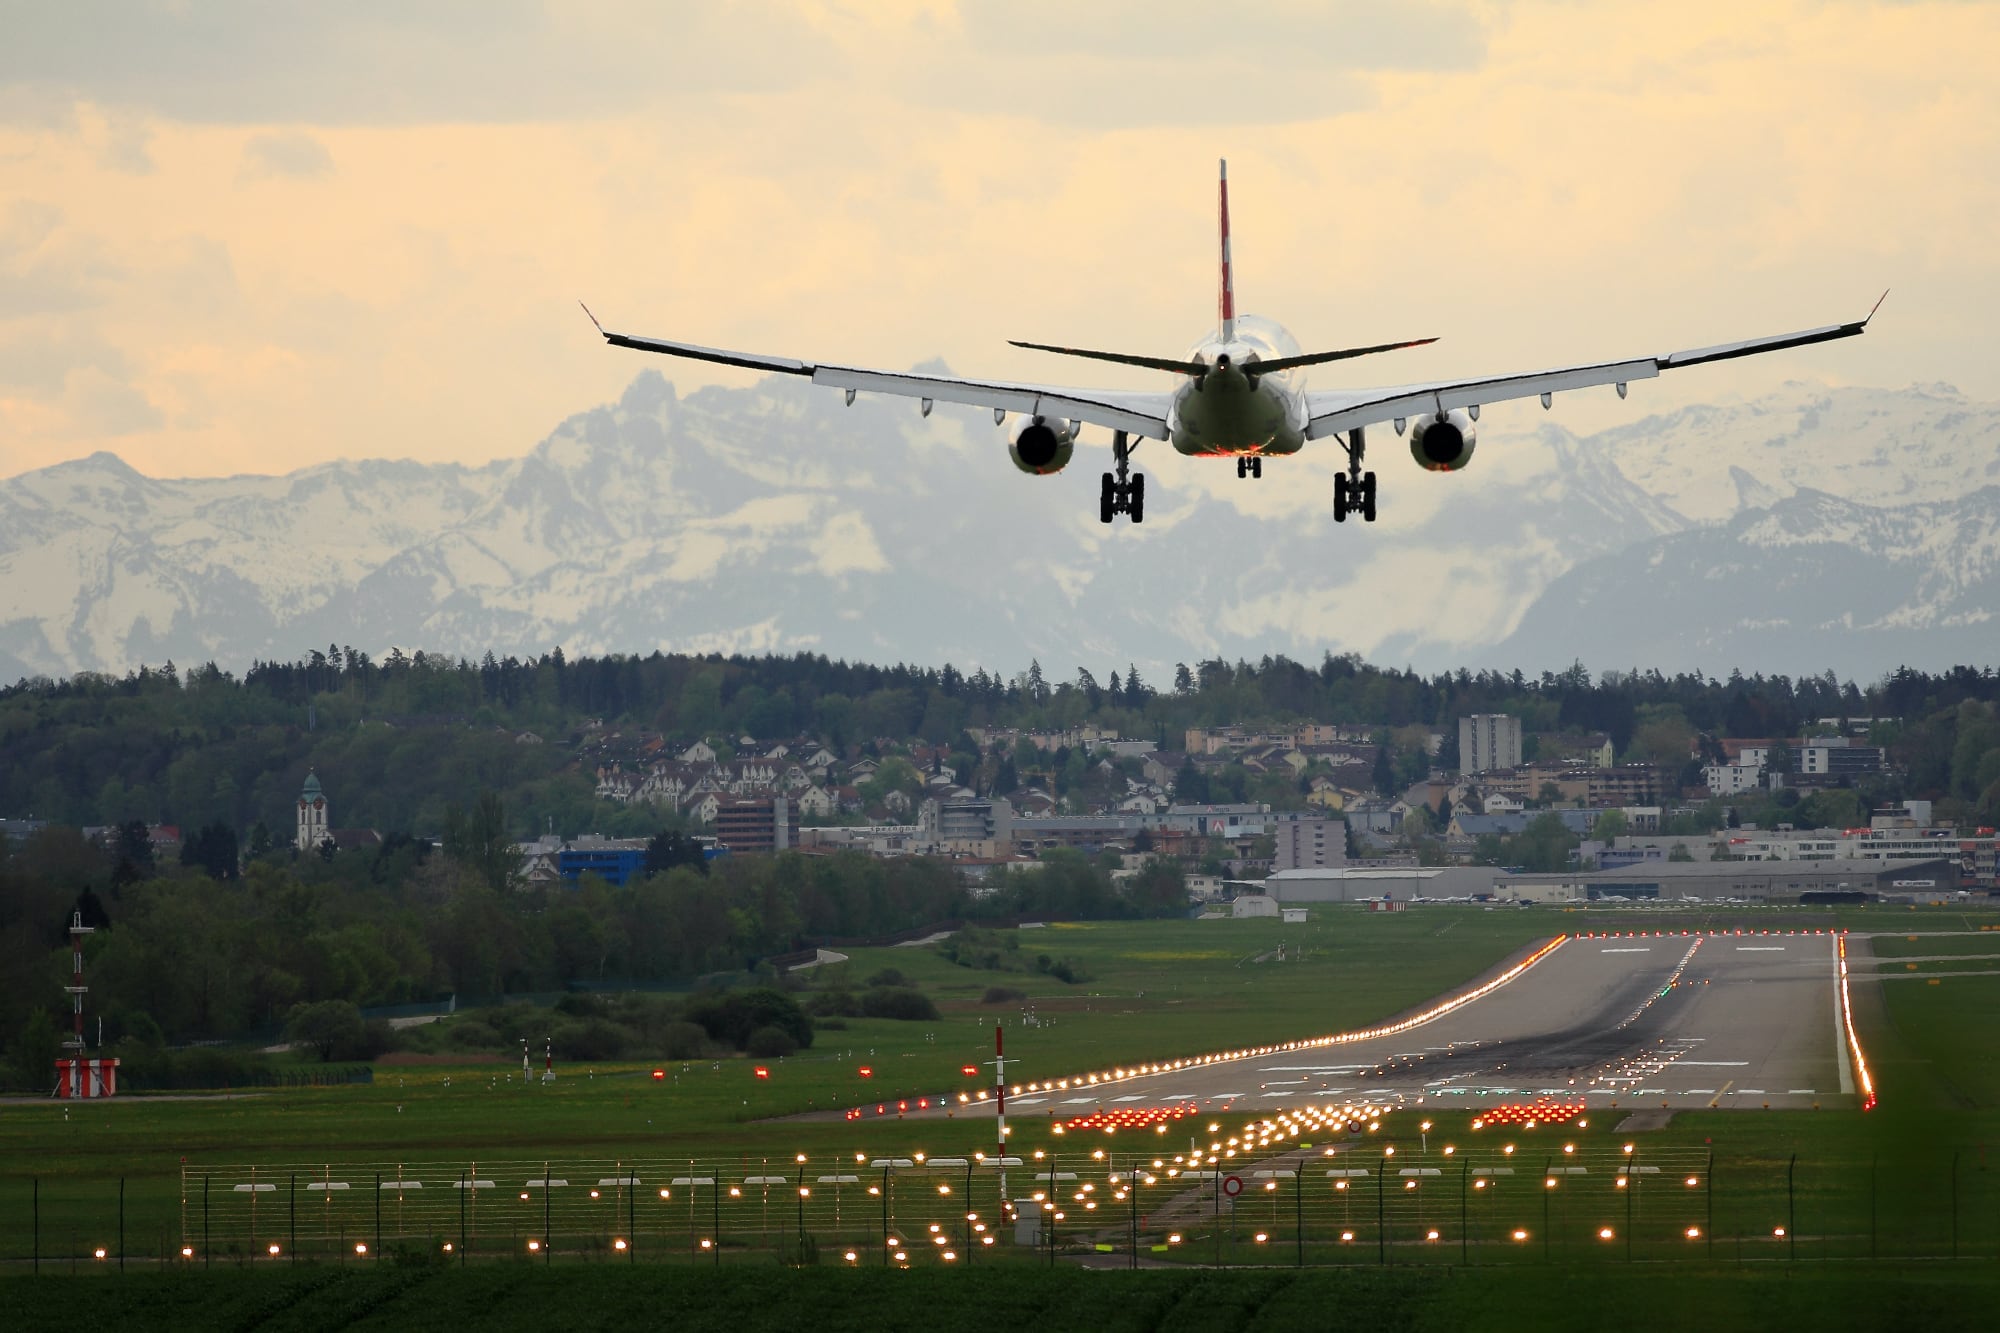 Aeronaves chegando para um pouso ao entardecer sobre uma pista com Alpes suíços ao fundo.